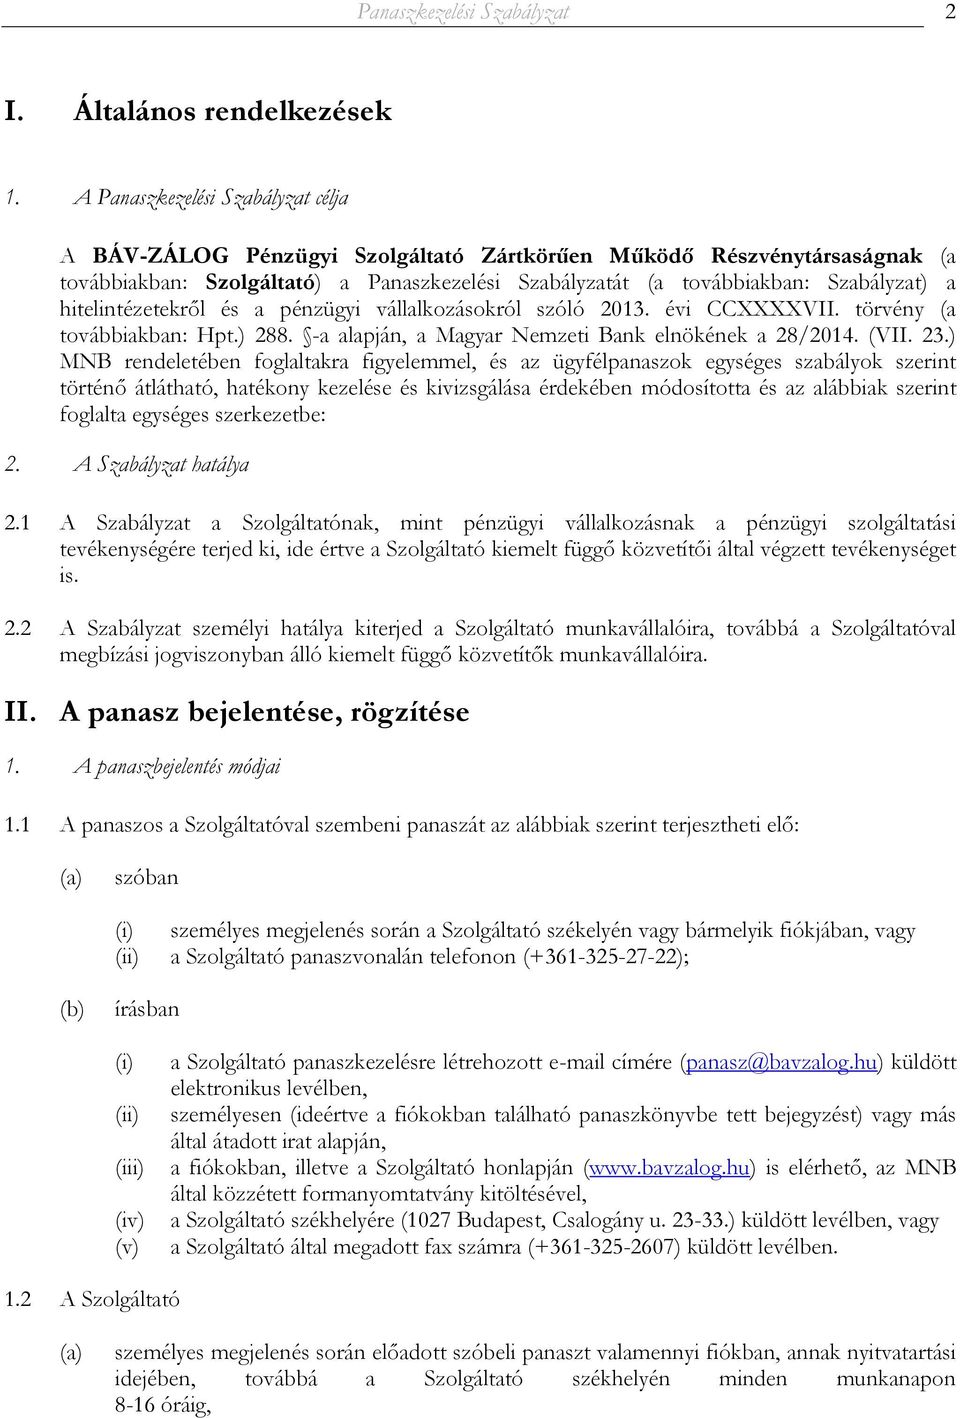 hitelintézetekről és a pénzügyi vállalkozásokról szóló 2013. évi CCXXXXVII. törvény (a továbbiakban: Hpt.) 288. -a alapján, a Magyar Nemzeti Bank elnökének a 28/2014. (VII. 23.